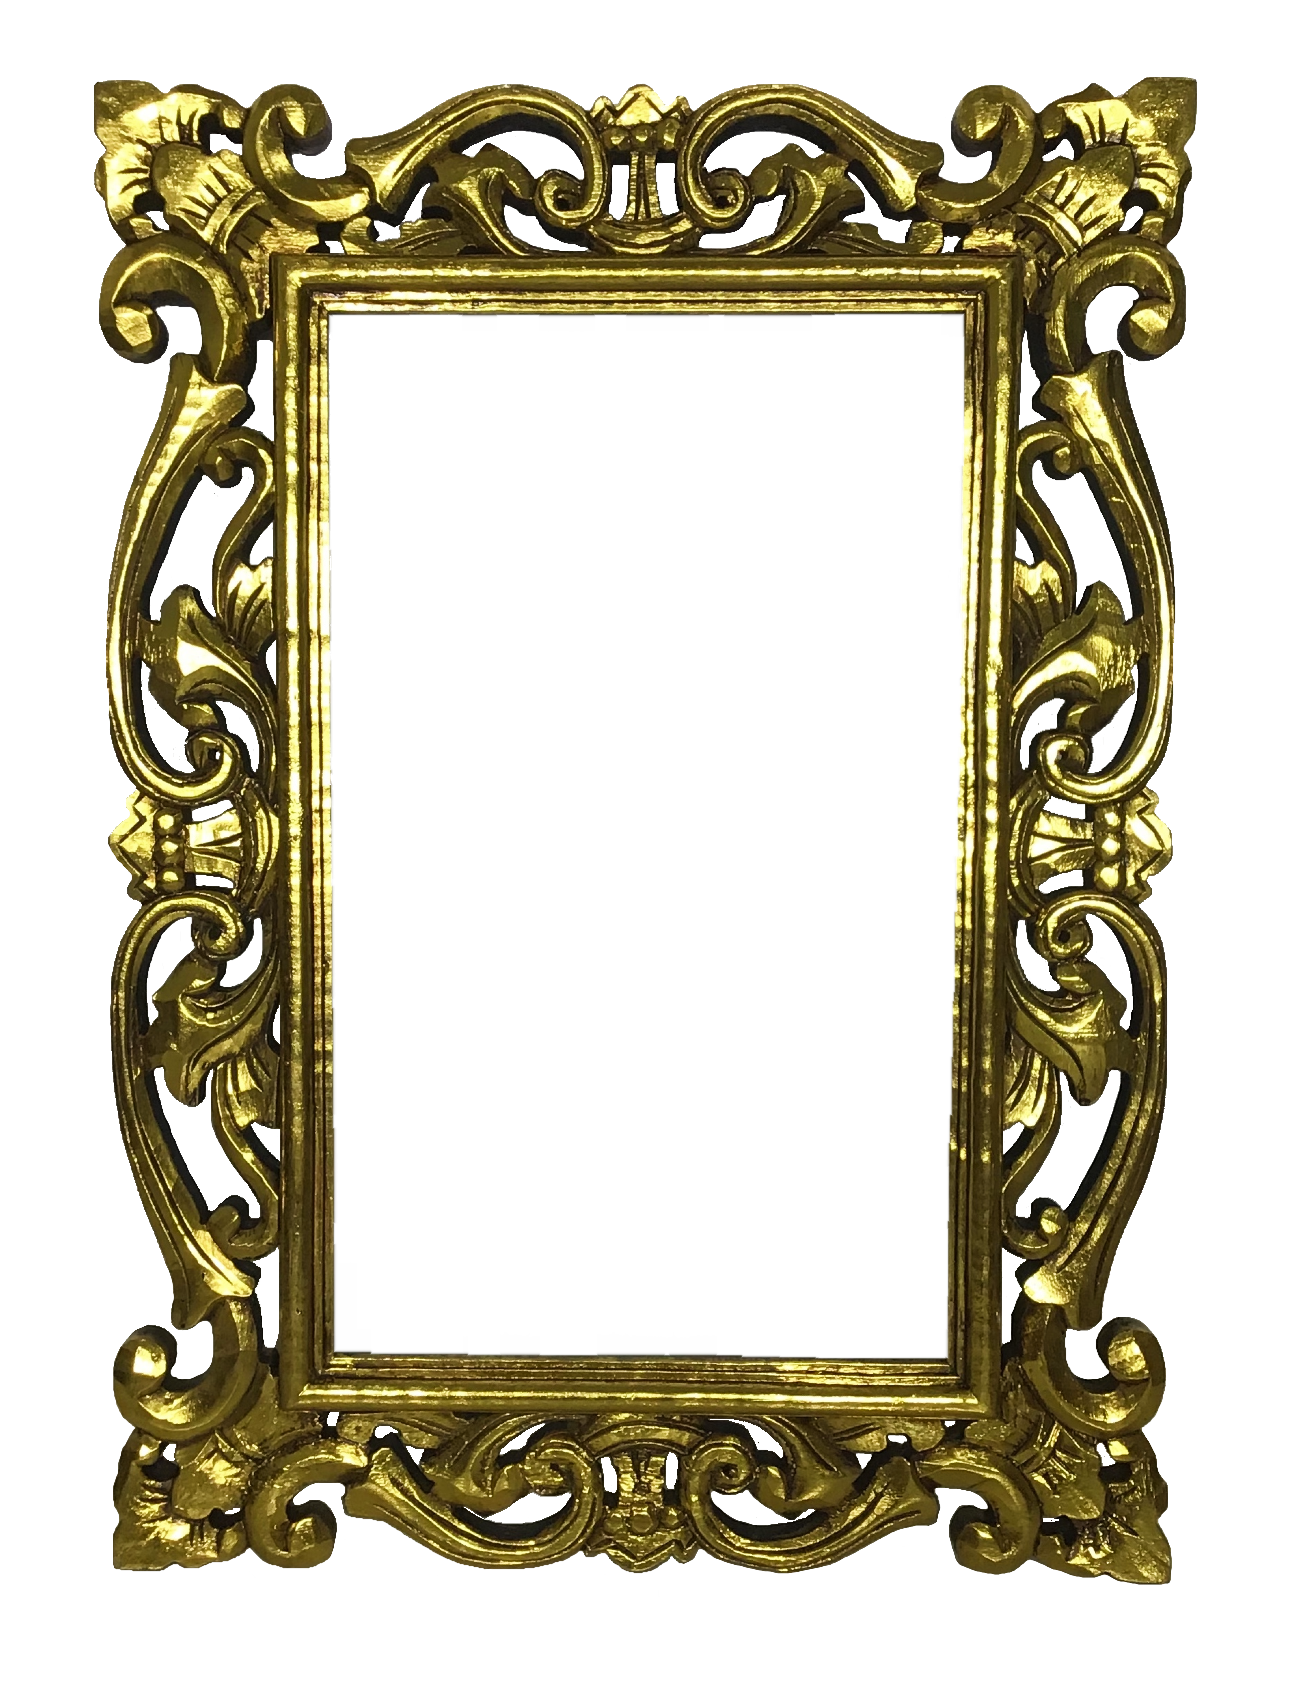 Marco de espejo tallado 70cm x 50cm 